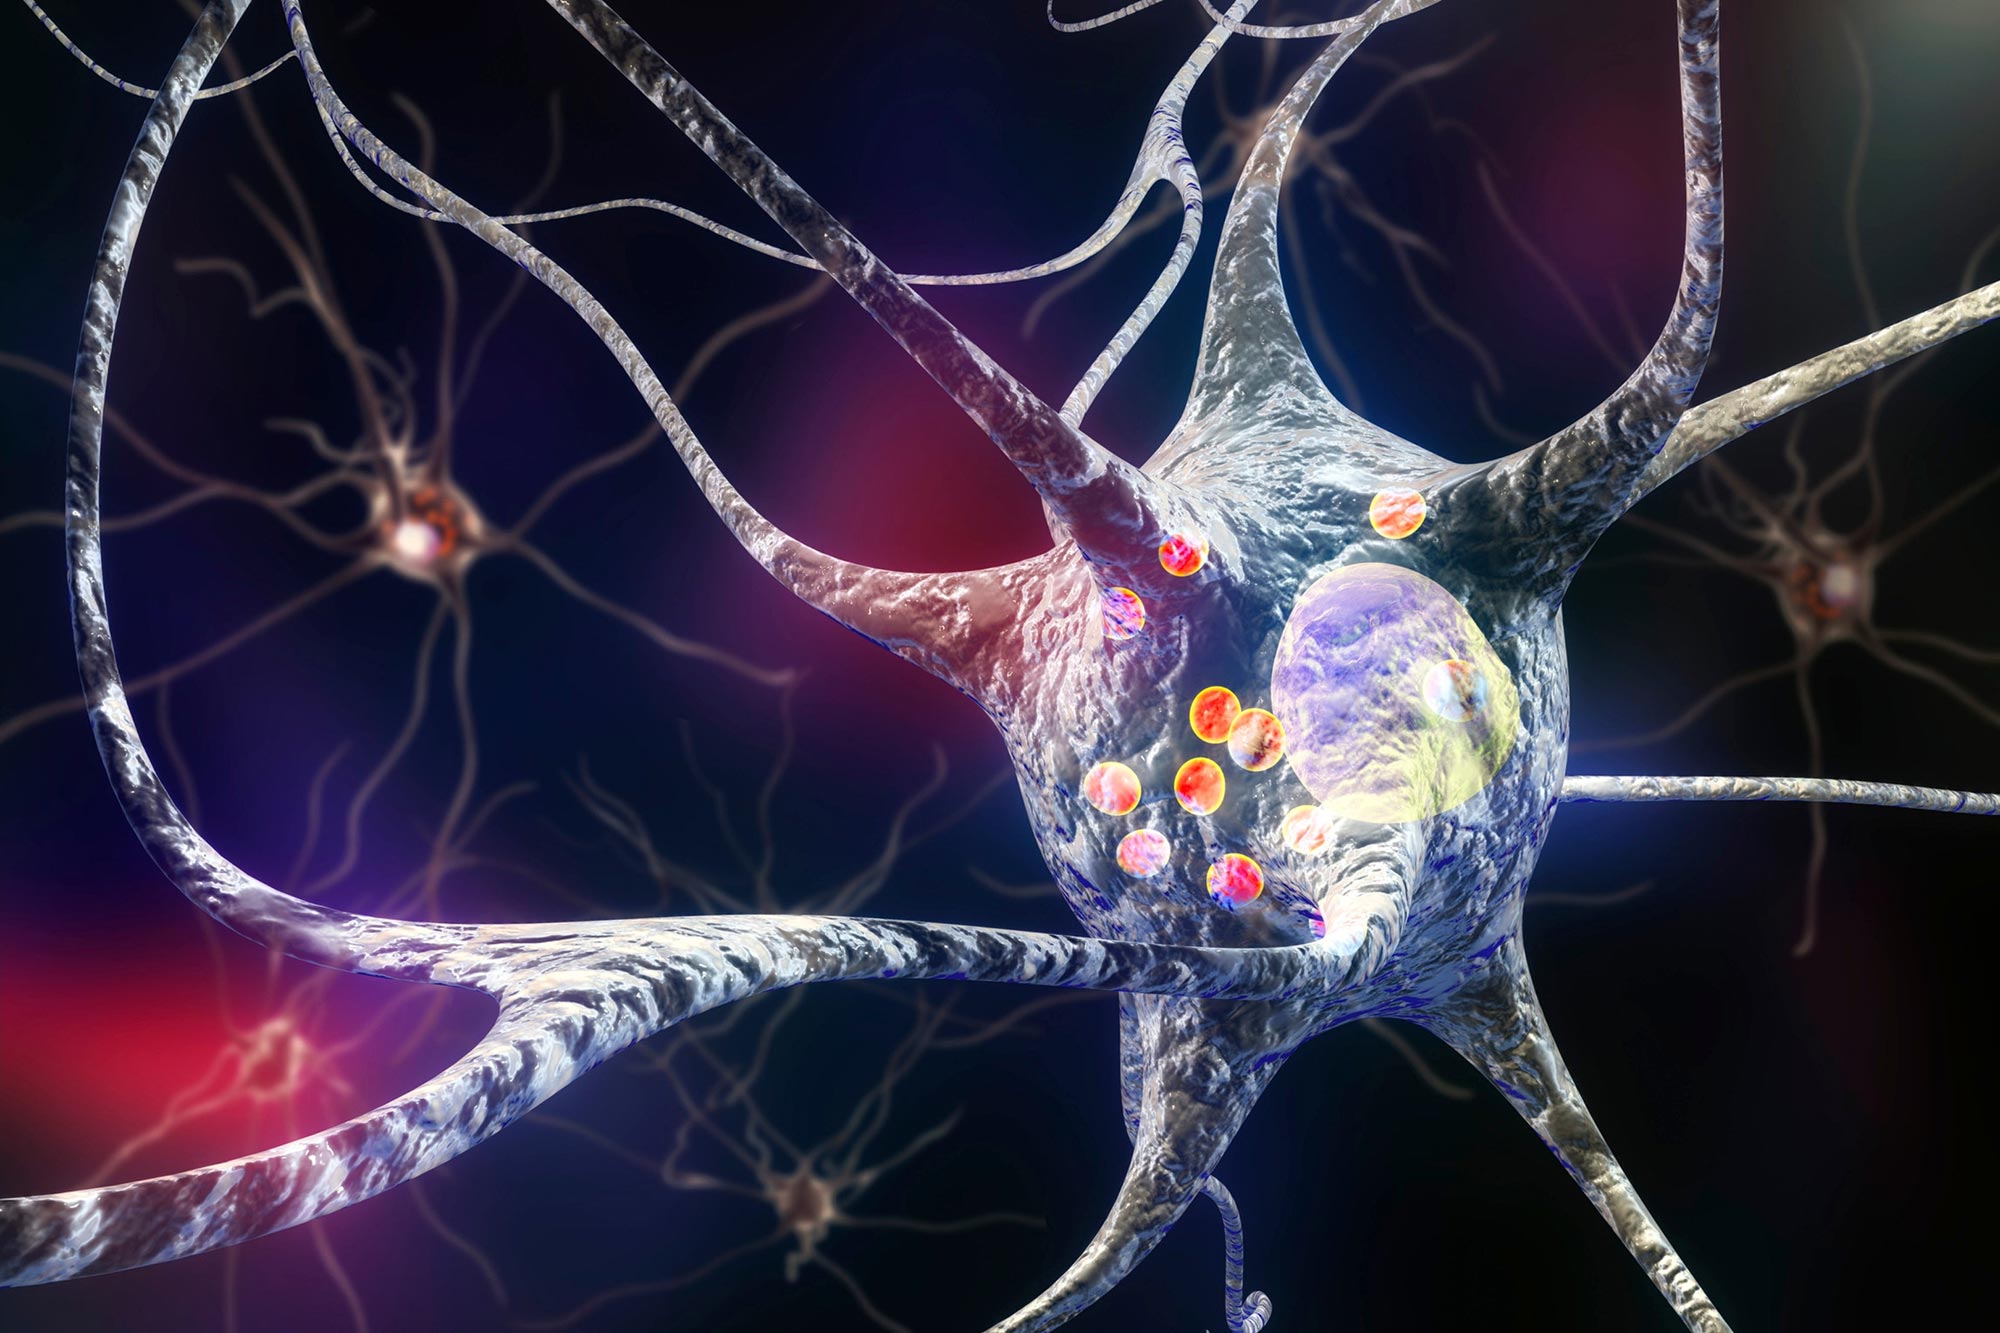 Parkinson's disease nerve cells